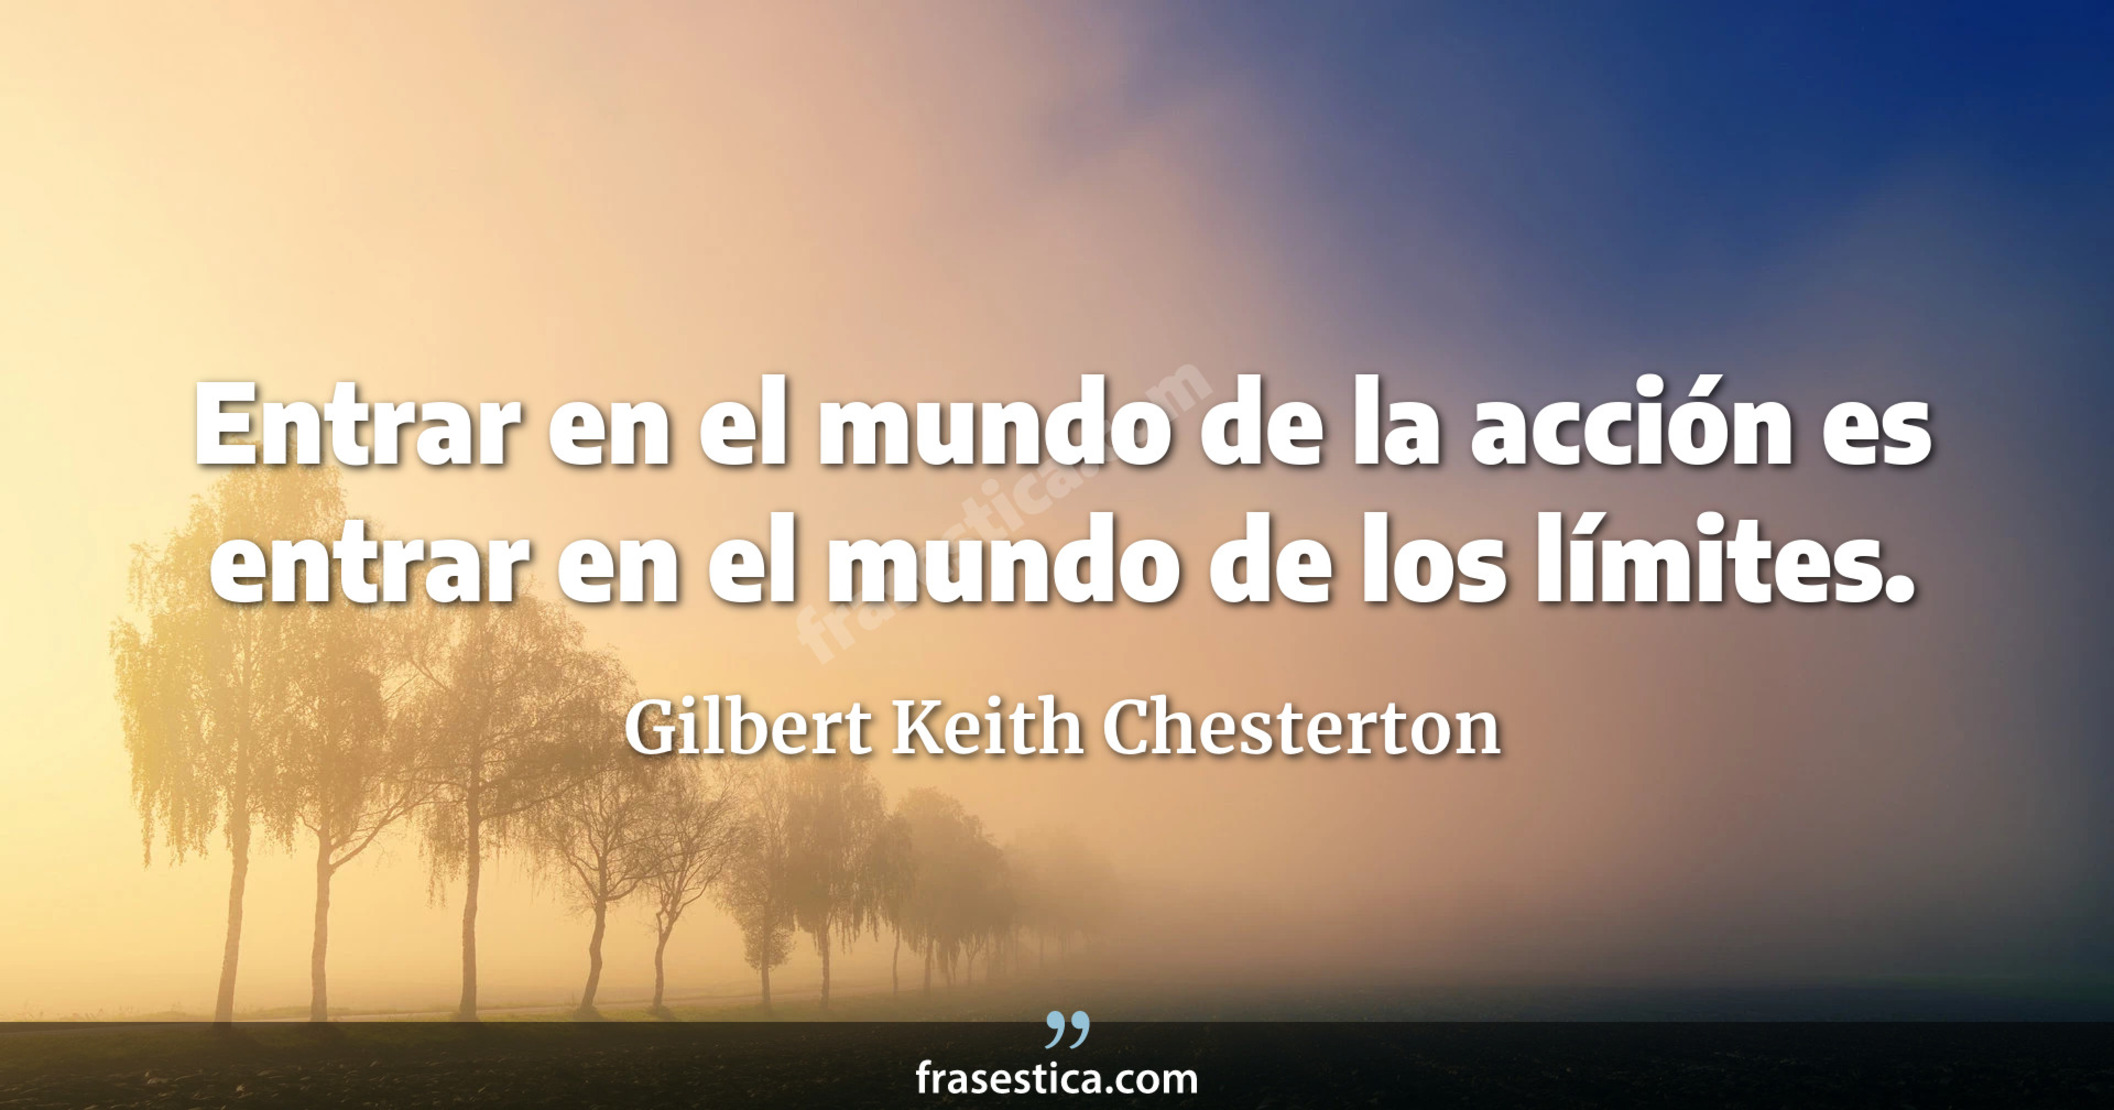 Entrar en el mundo de la acción es entrar en el mundo de los límites. - Gilbert Keith Chesterton